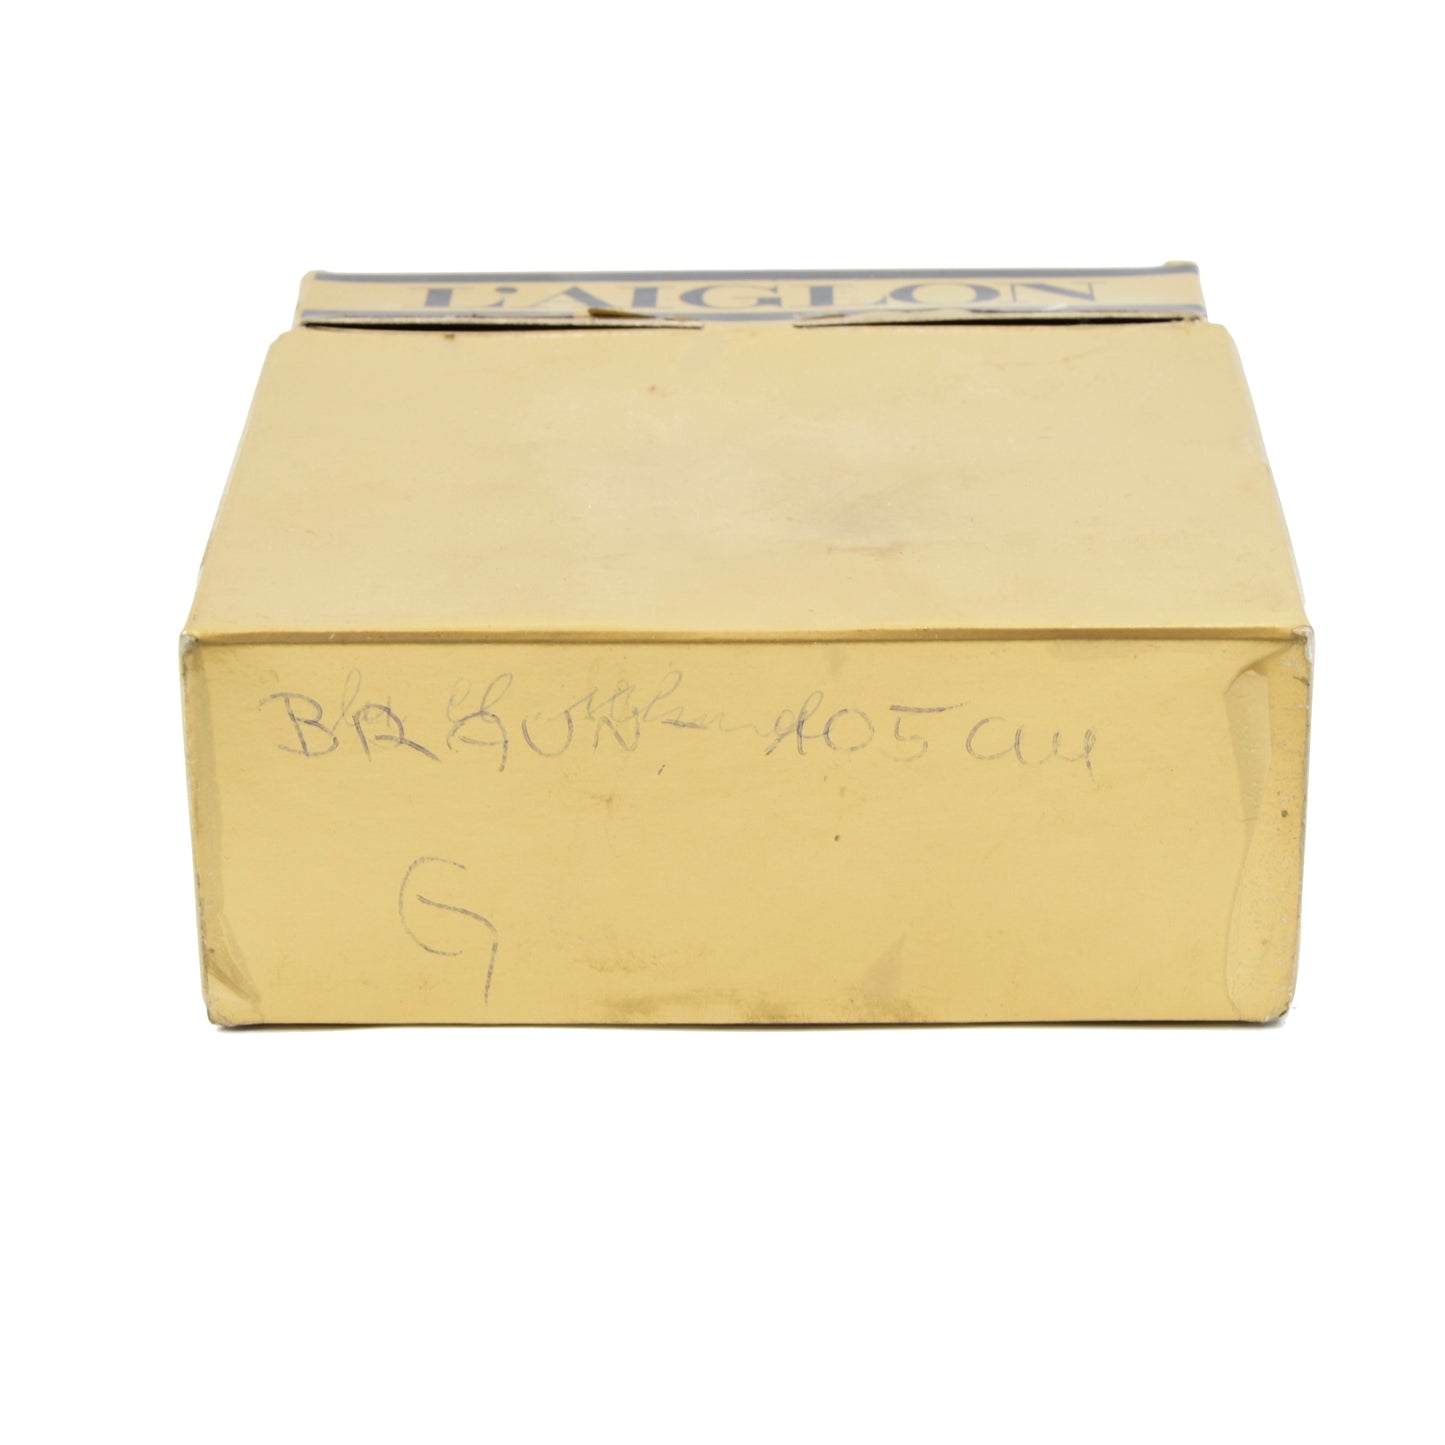 L'Aiglon Vachette Leather Belt Size 42/105 - Brown